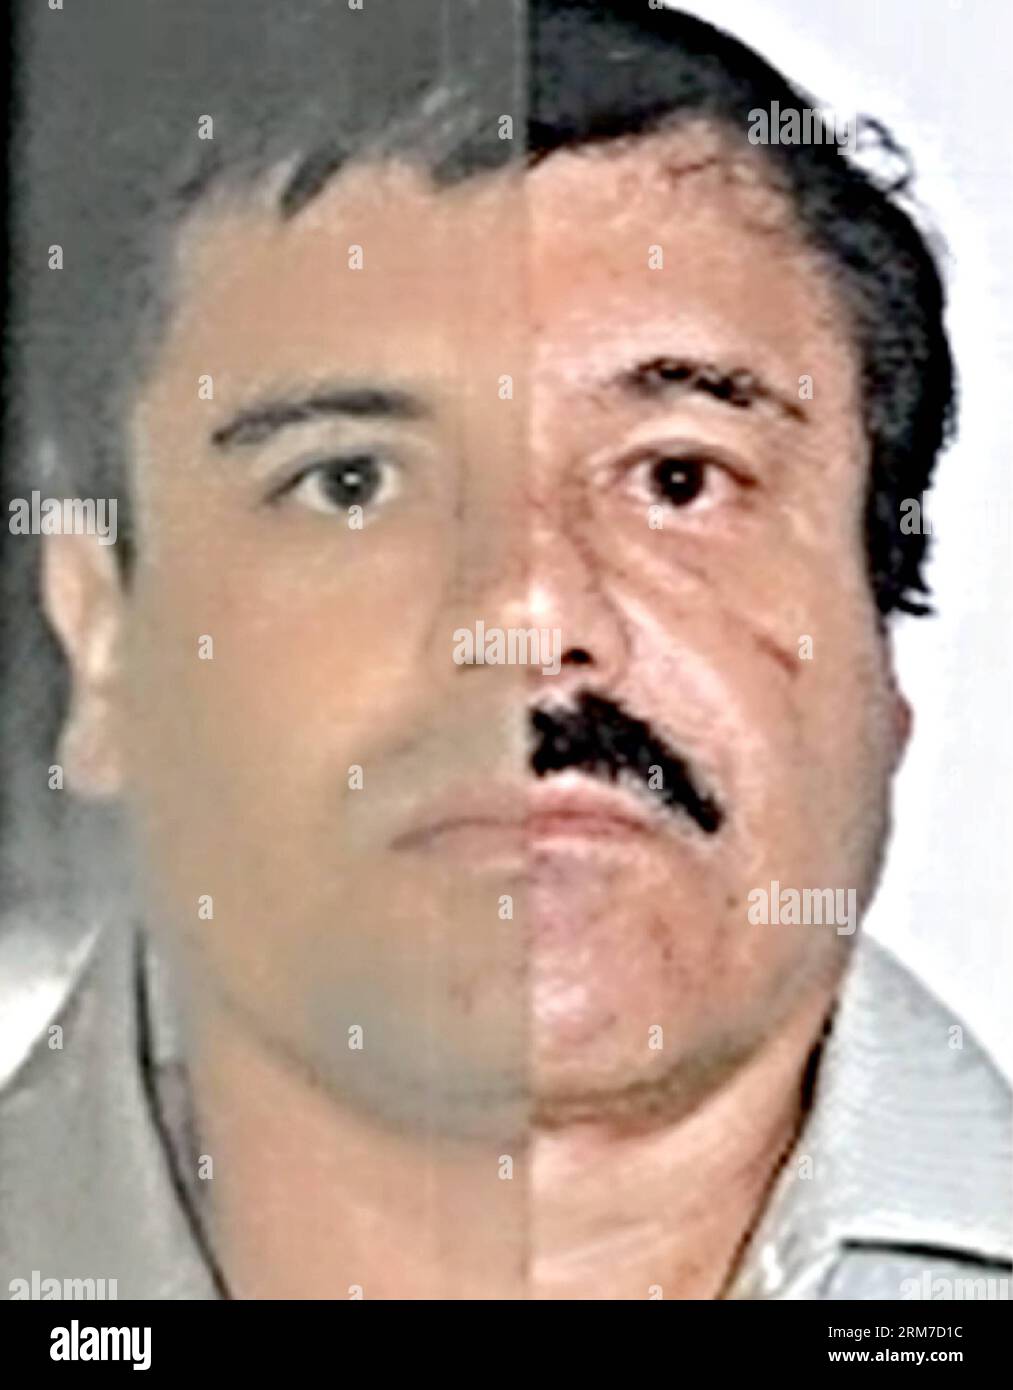 (140226) -- MEXICO, 26 février 2014 (Xinhua) -- photo combinée publiée par le Bureau du procureur général (PGR) du Mexique avec des marques cartographiques d'identification faites par la source pour souligner les similitudes dans les mesures du visage, montre Joaquin El Chapo Guzman, en utilisant des images faites de ses détentions de 1993 et 2014. Le chef du cartel Sinaloa a été soumis à un prélèvement buccal, à une étude d'identité phisiognomique et à un test de 10 empreintes digitales. Mardi, les tribunaux fédéraux au Mexique ont officiellement inculpé Joaquin El Chapo Guzman, le chef capturé du cartel de la drogue de Sinaloa, de crime organisé et de trafic de drogue. (Xinhua/Mexique s Banque D'Images